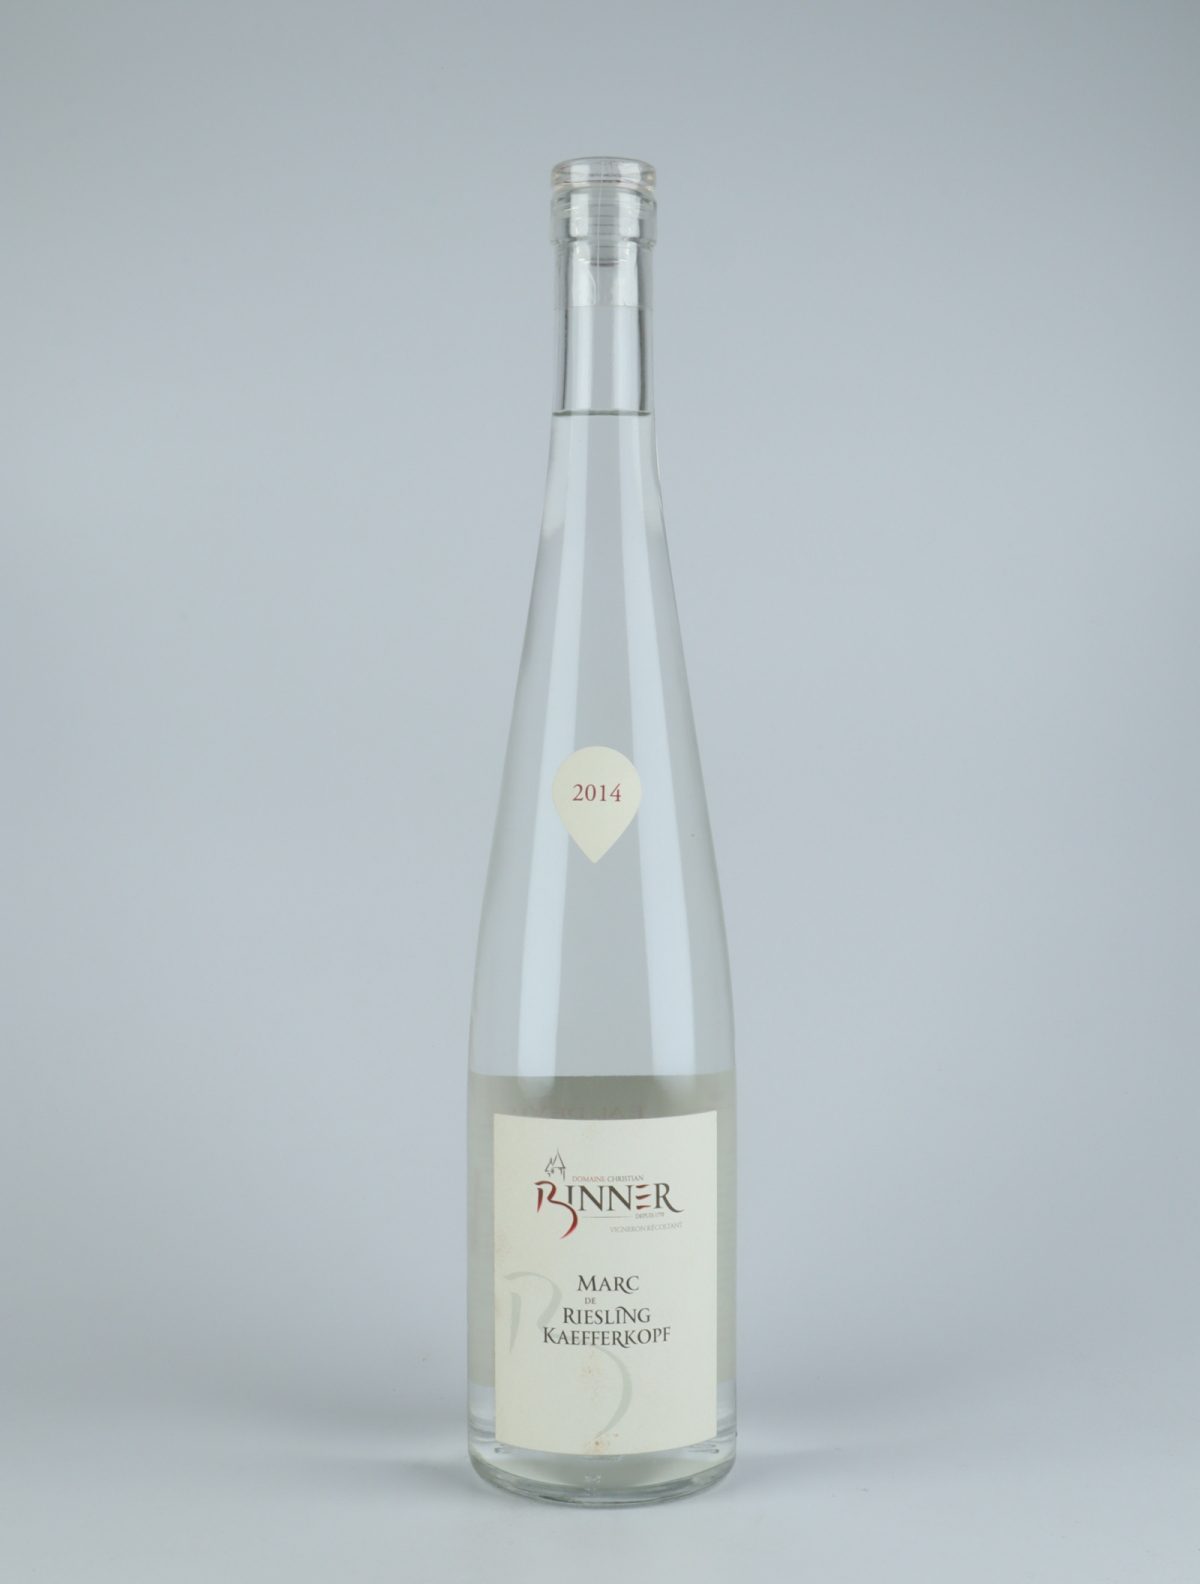 A bottle N.V. Marc de Riesling Kaefferkopf Spirits from , Alsace in France